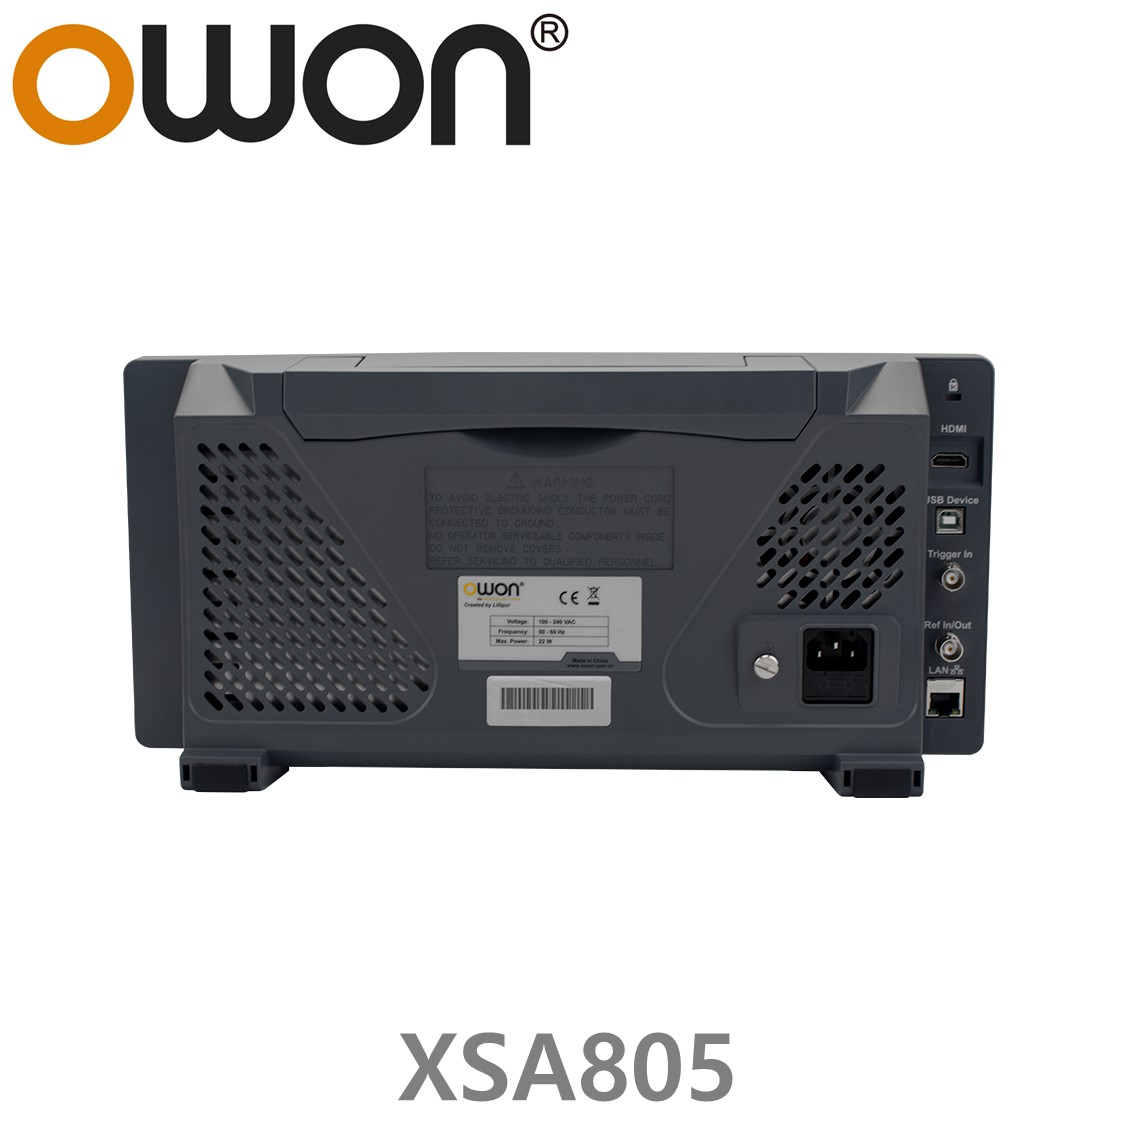 [ OWON ] XSA805 9인치 스펙트럼 아날라이저 9kHz~500MHz